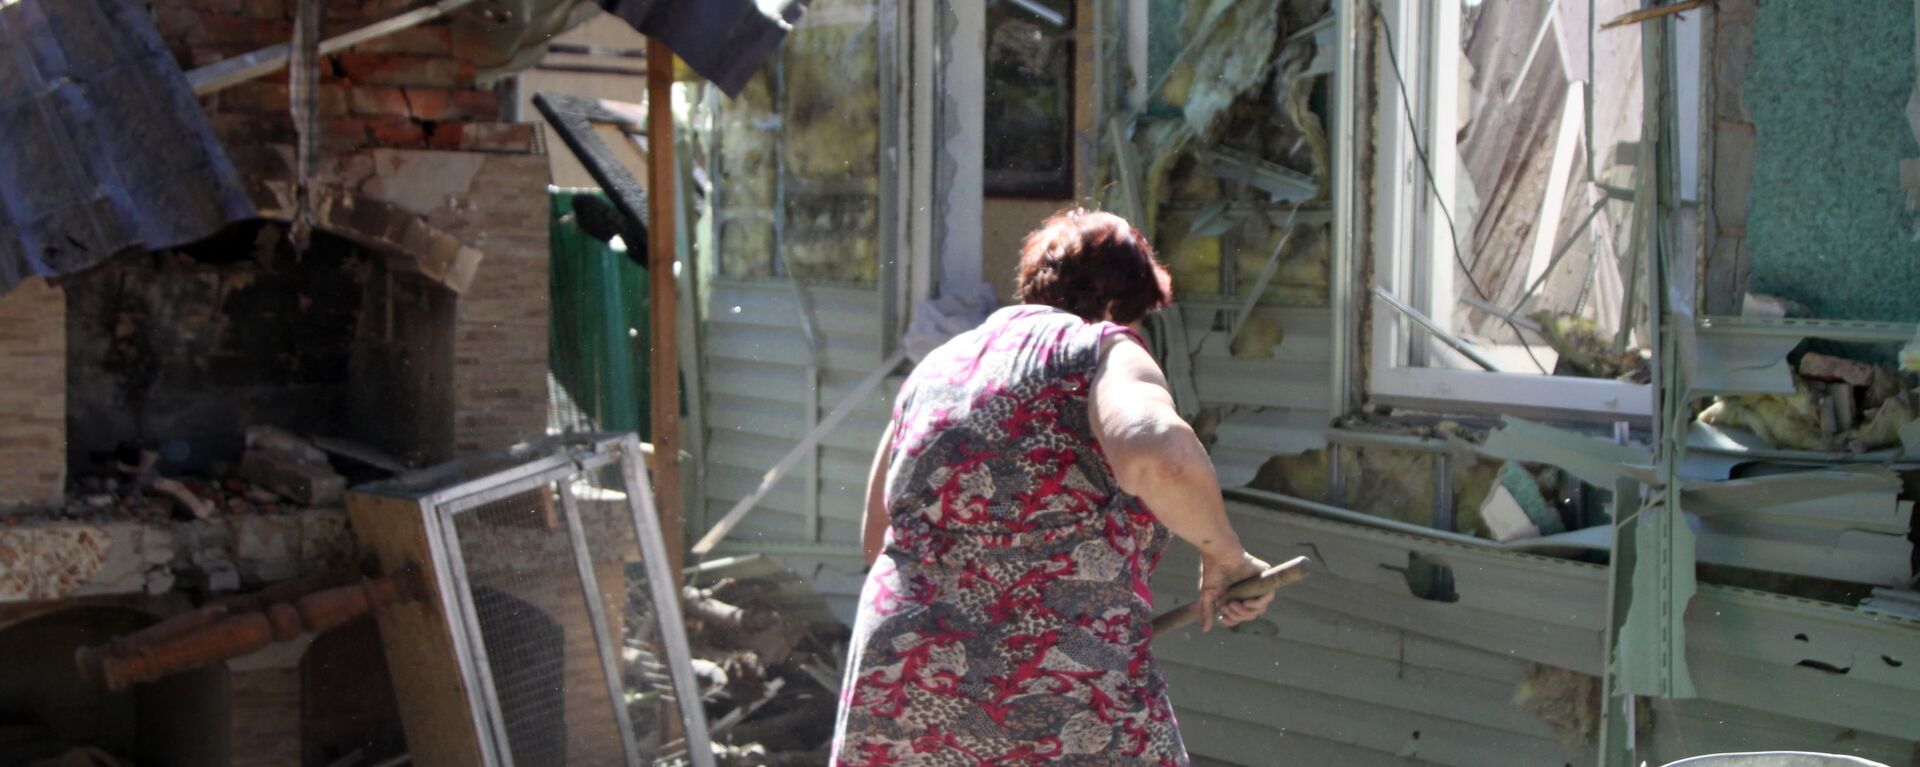 Женщина убирает мусор во дворе жилого дома в Донецке, пострадавшего в результате обстрела - Sputnik Ўзбекистон, 1920, 24.08.2021